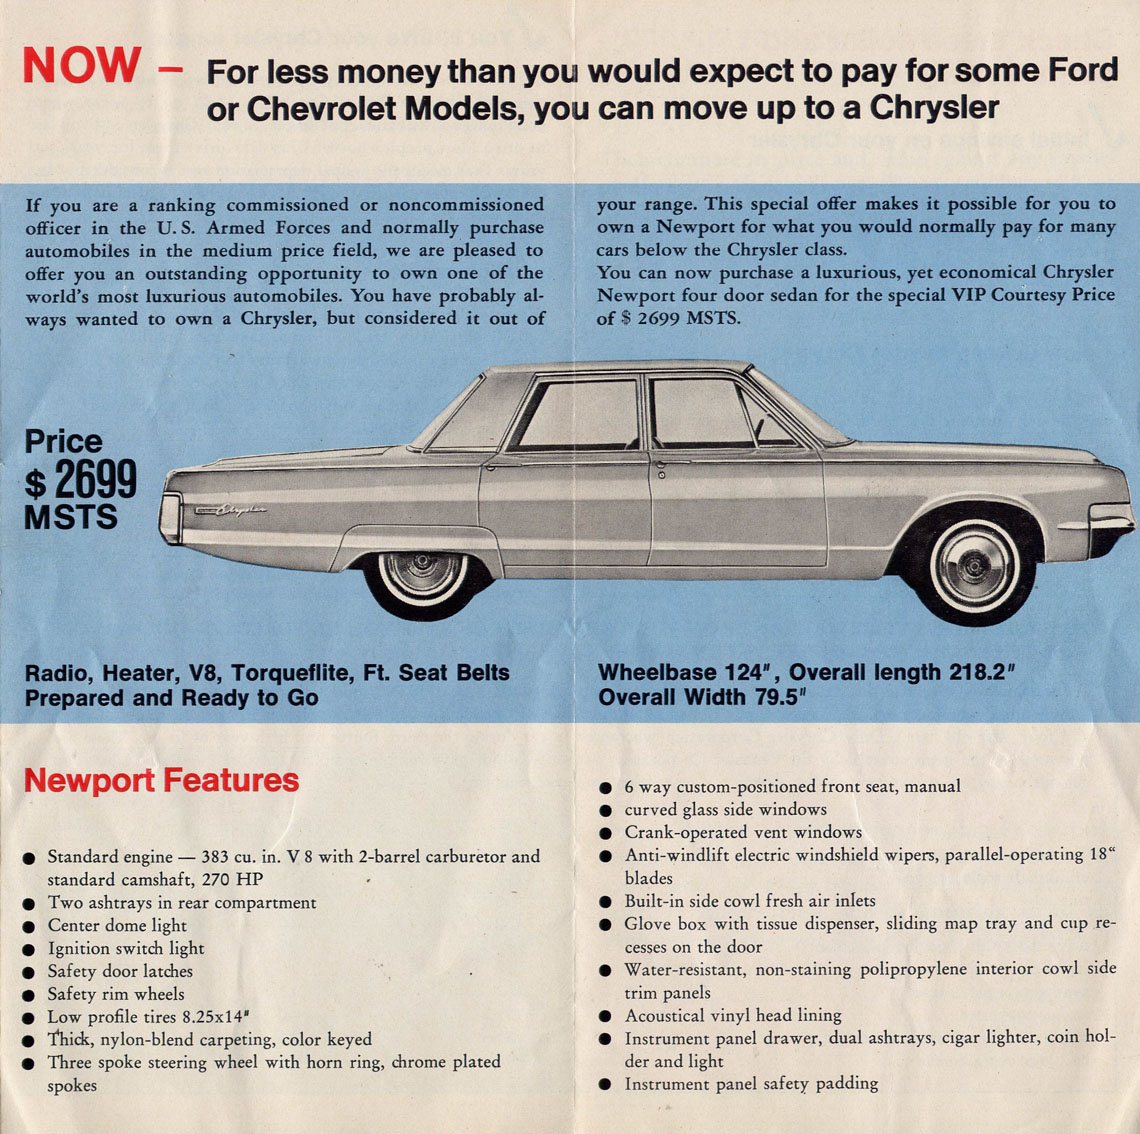 1965_Chrysler_Military_Sales_Folder-02-03